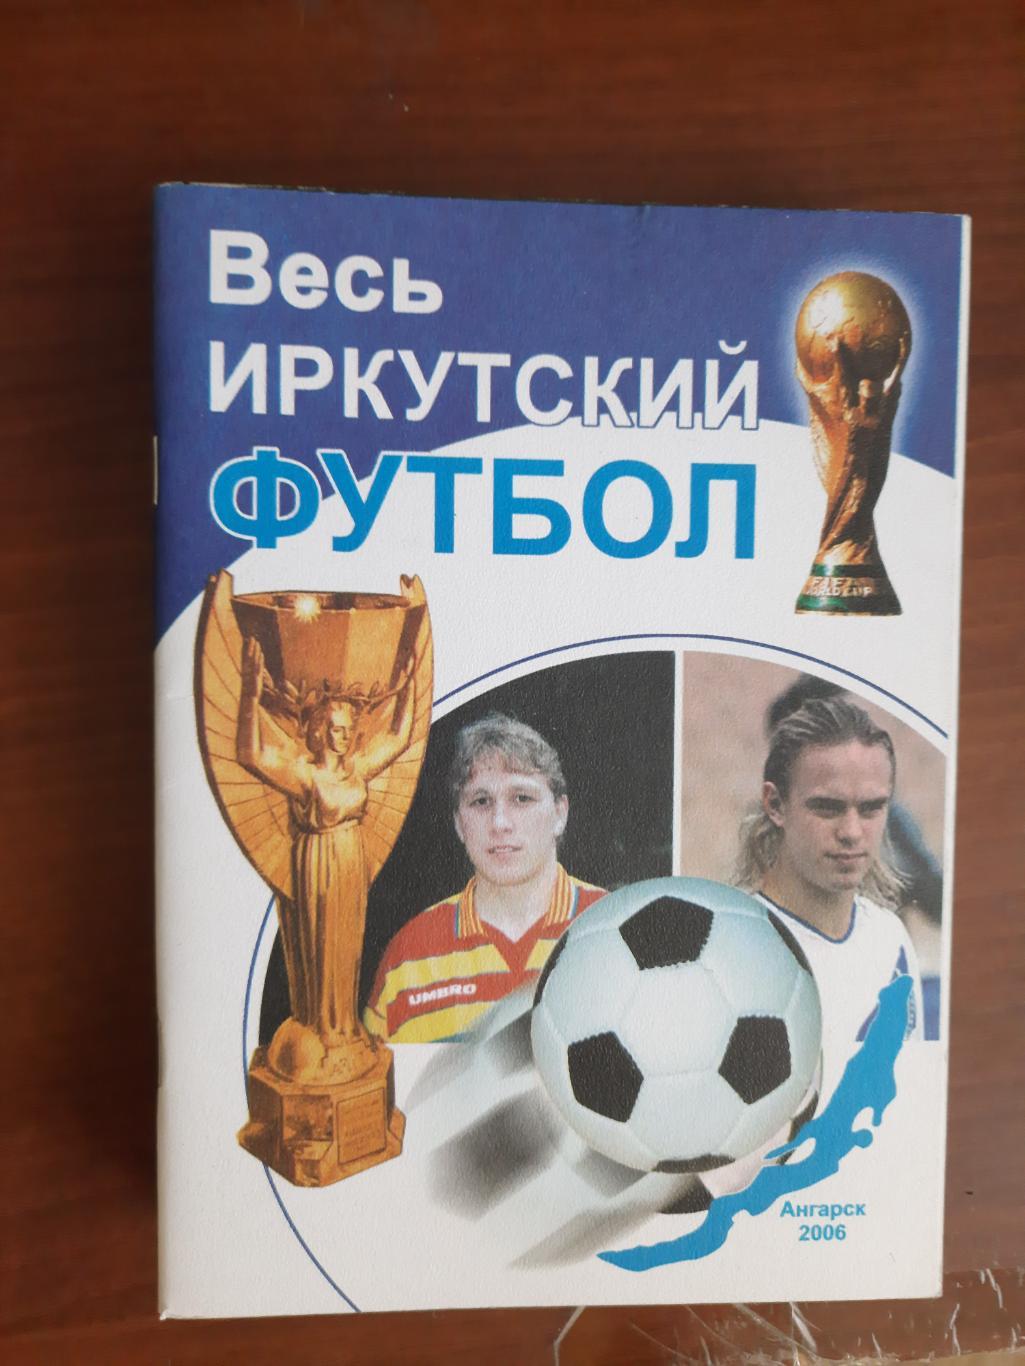 Весь Иркутский футбол (Ангарск, 2006)